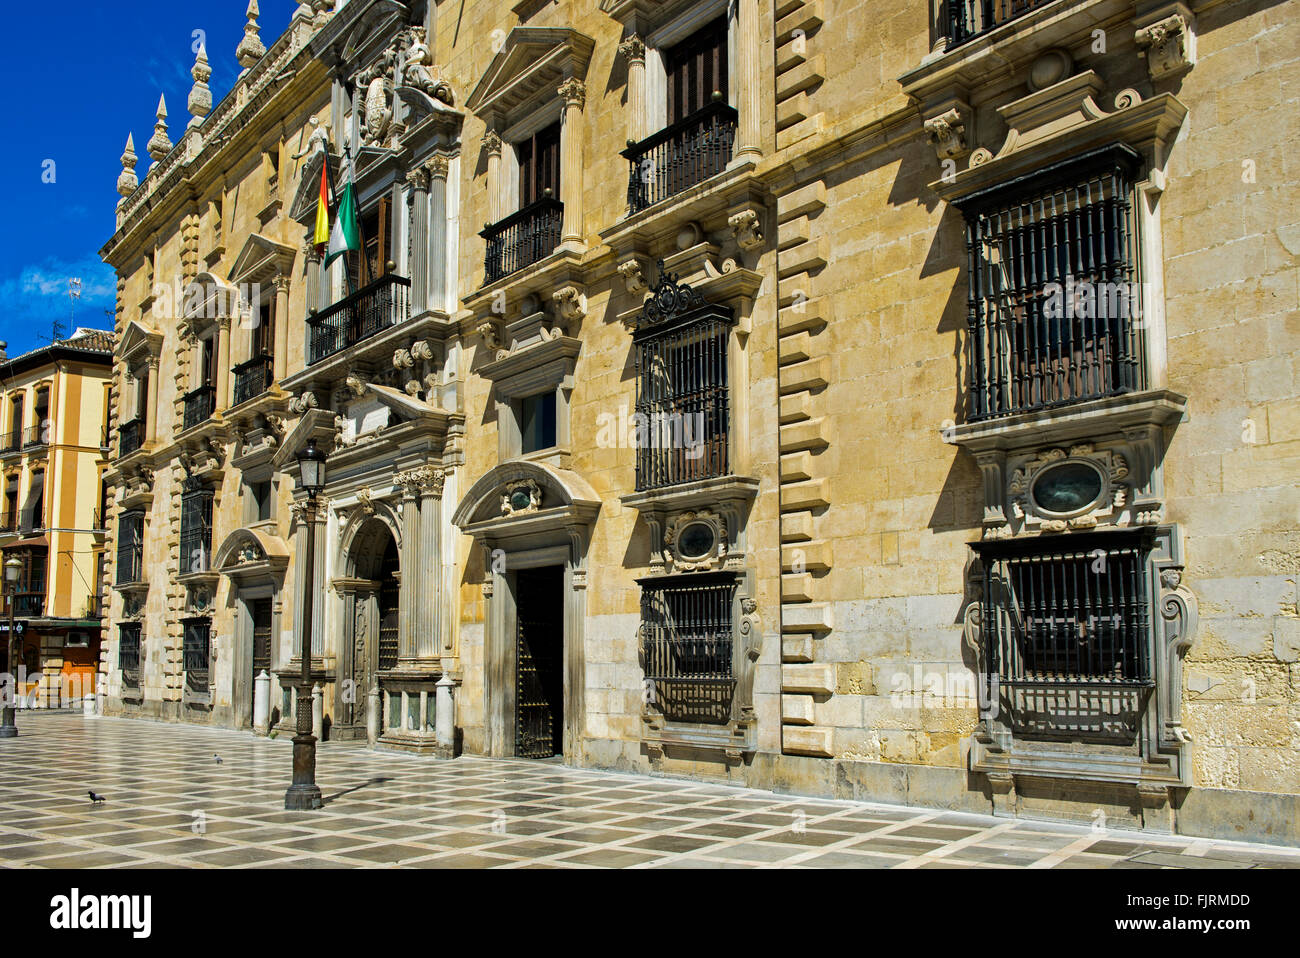 Royal Palace of Justice, Palacio de la Chancilleria, Plaza Nueva, Granada province, Andalusia, Spain Stock Photo